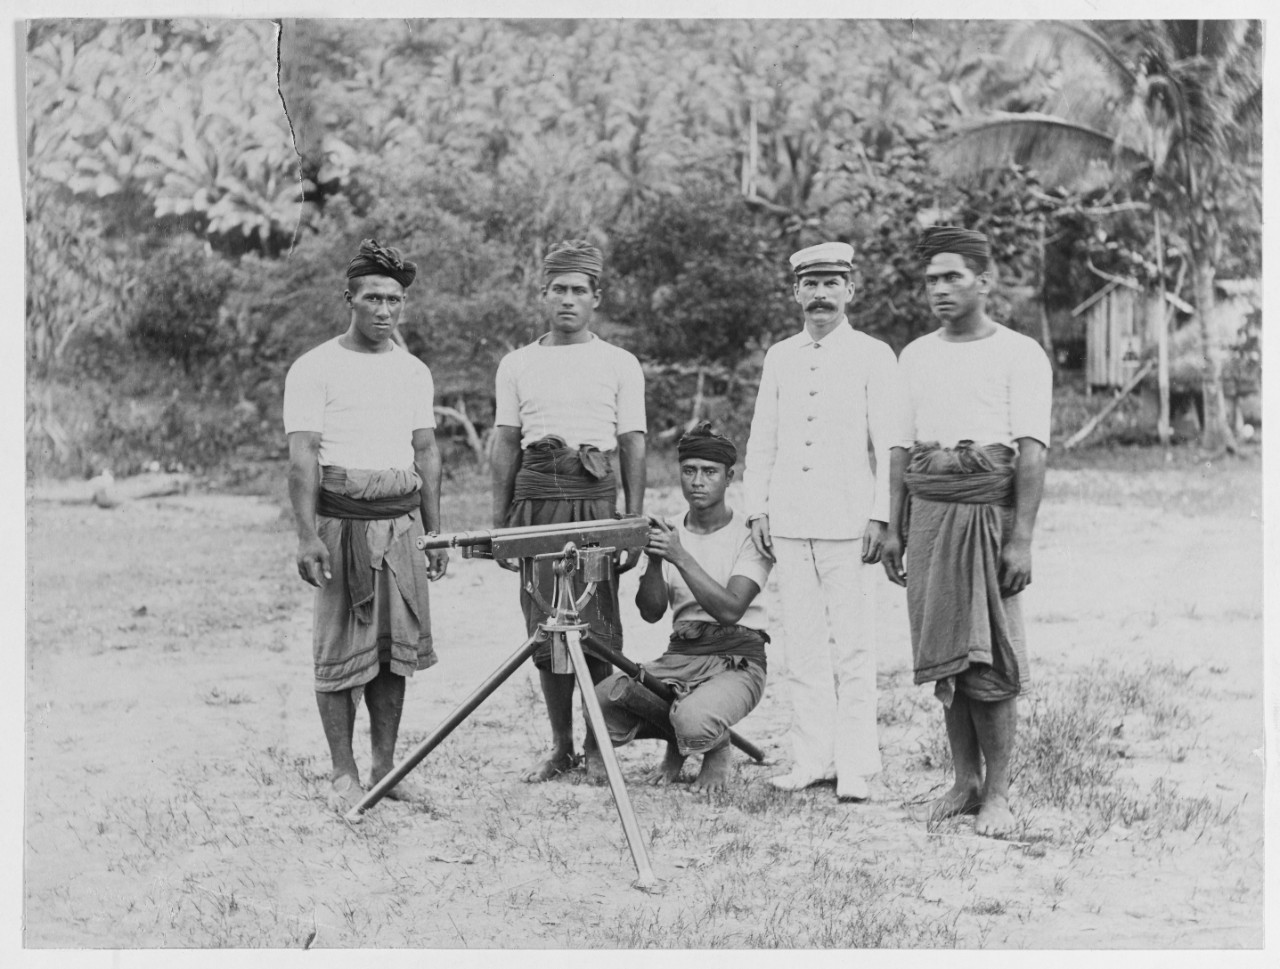 Native guard with Colt gun, Samoa, 1900-1901.